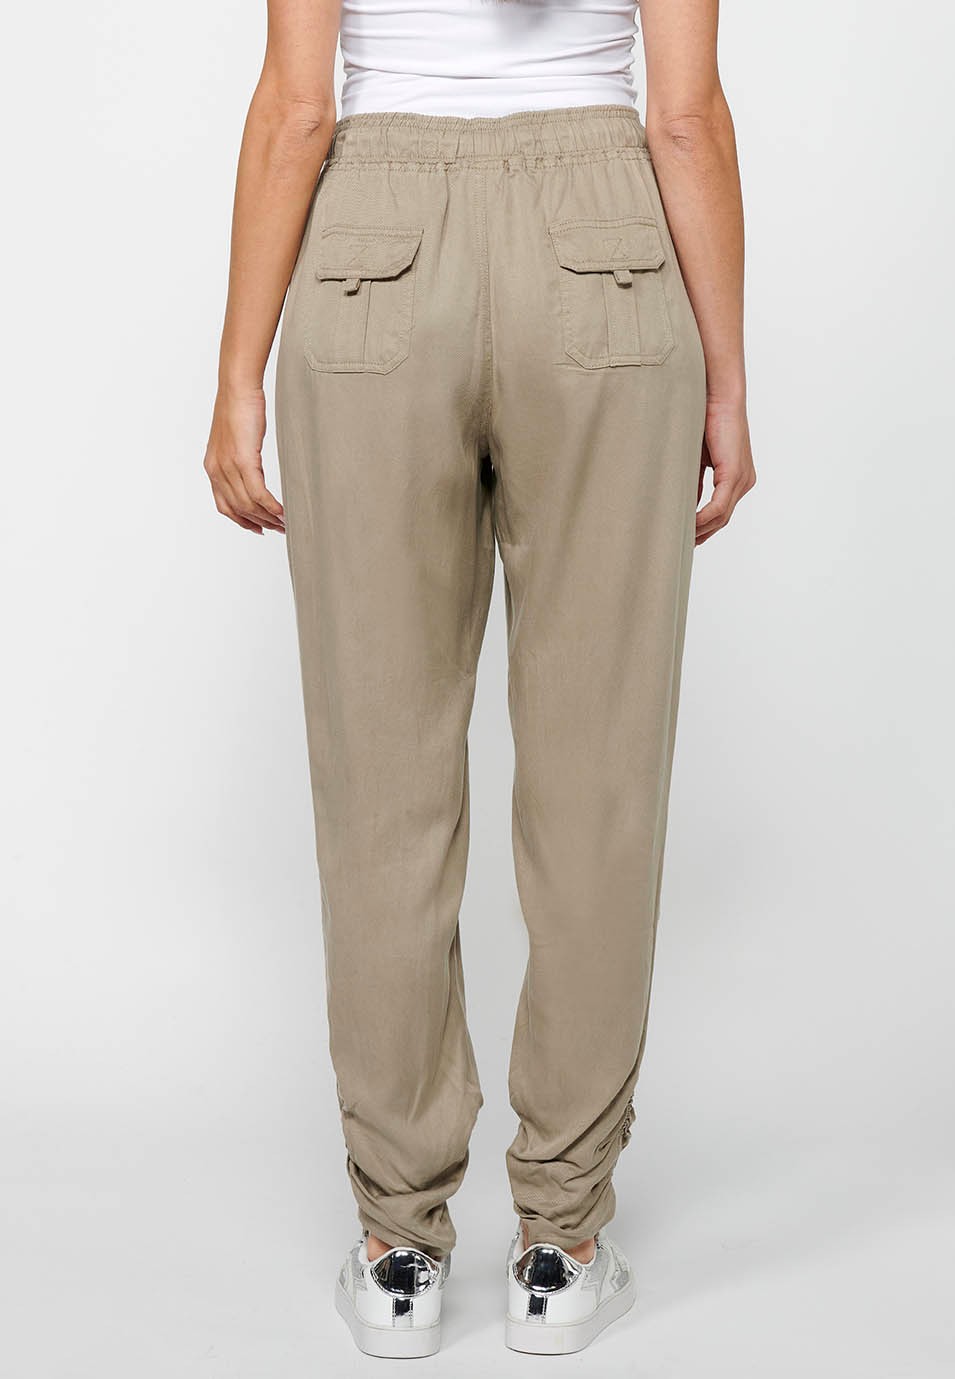 Pantalons llargs jogger amb Acabat arrissat i Cintura engomada amb Quatre butxaques, dos del darrere amb solapa de Color Gris per a Dona 4